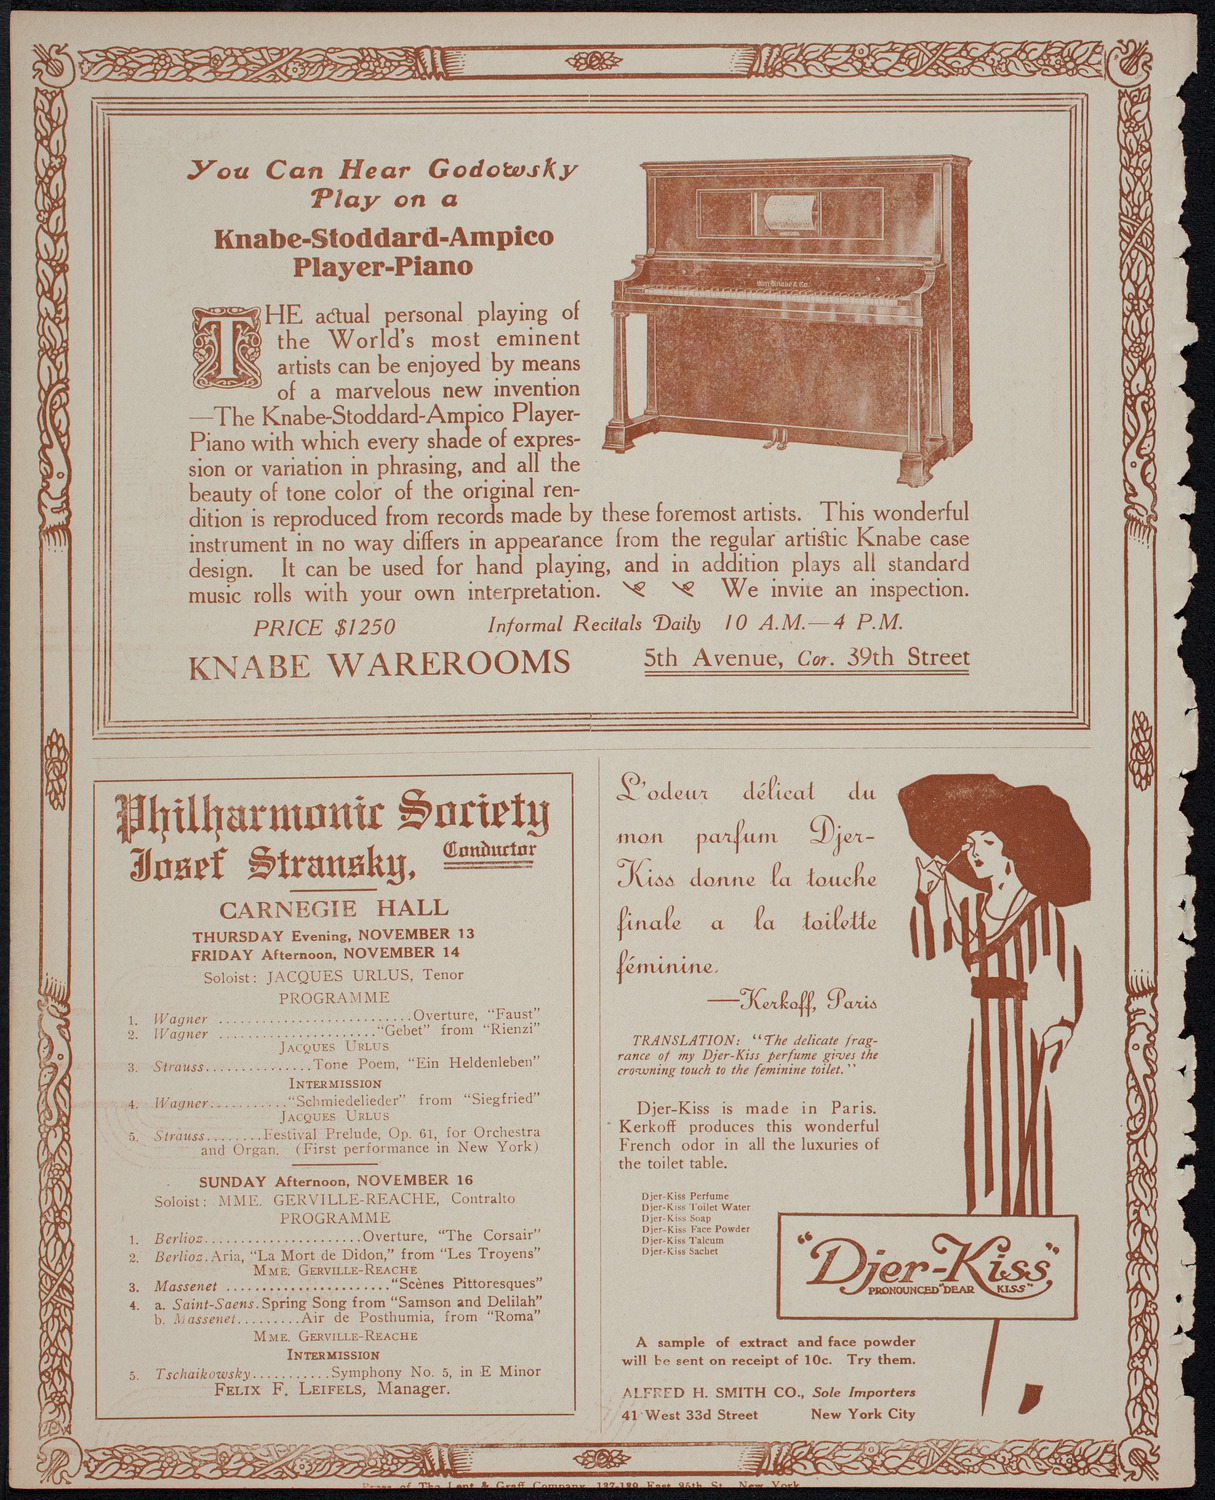 Eleanor Spencer, Piano, November 11, 1913, program page 12